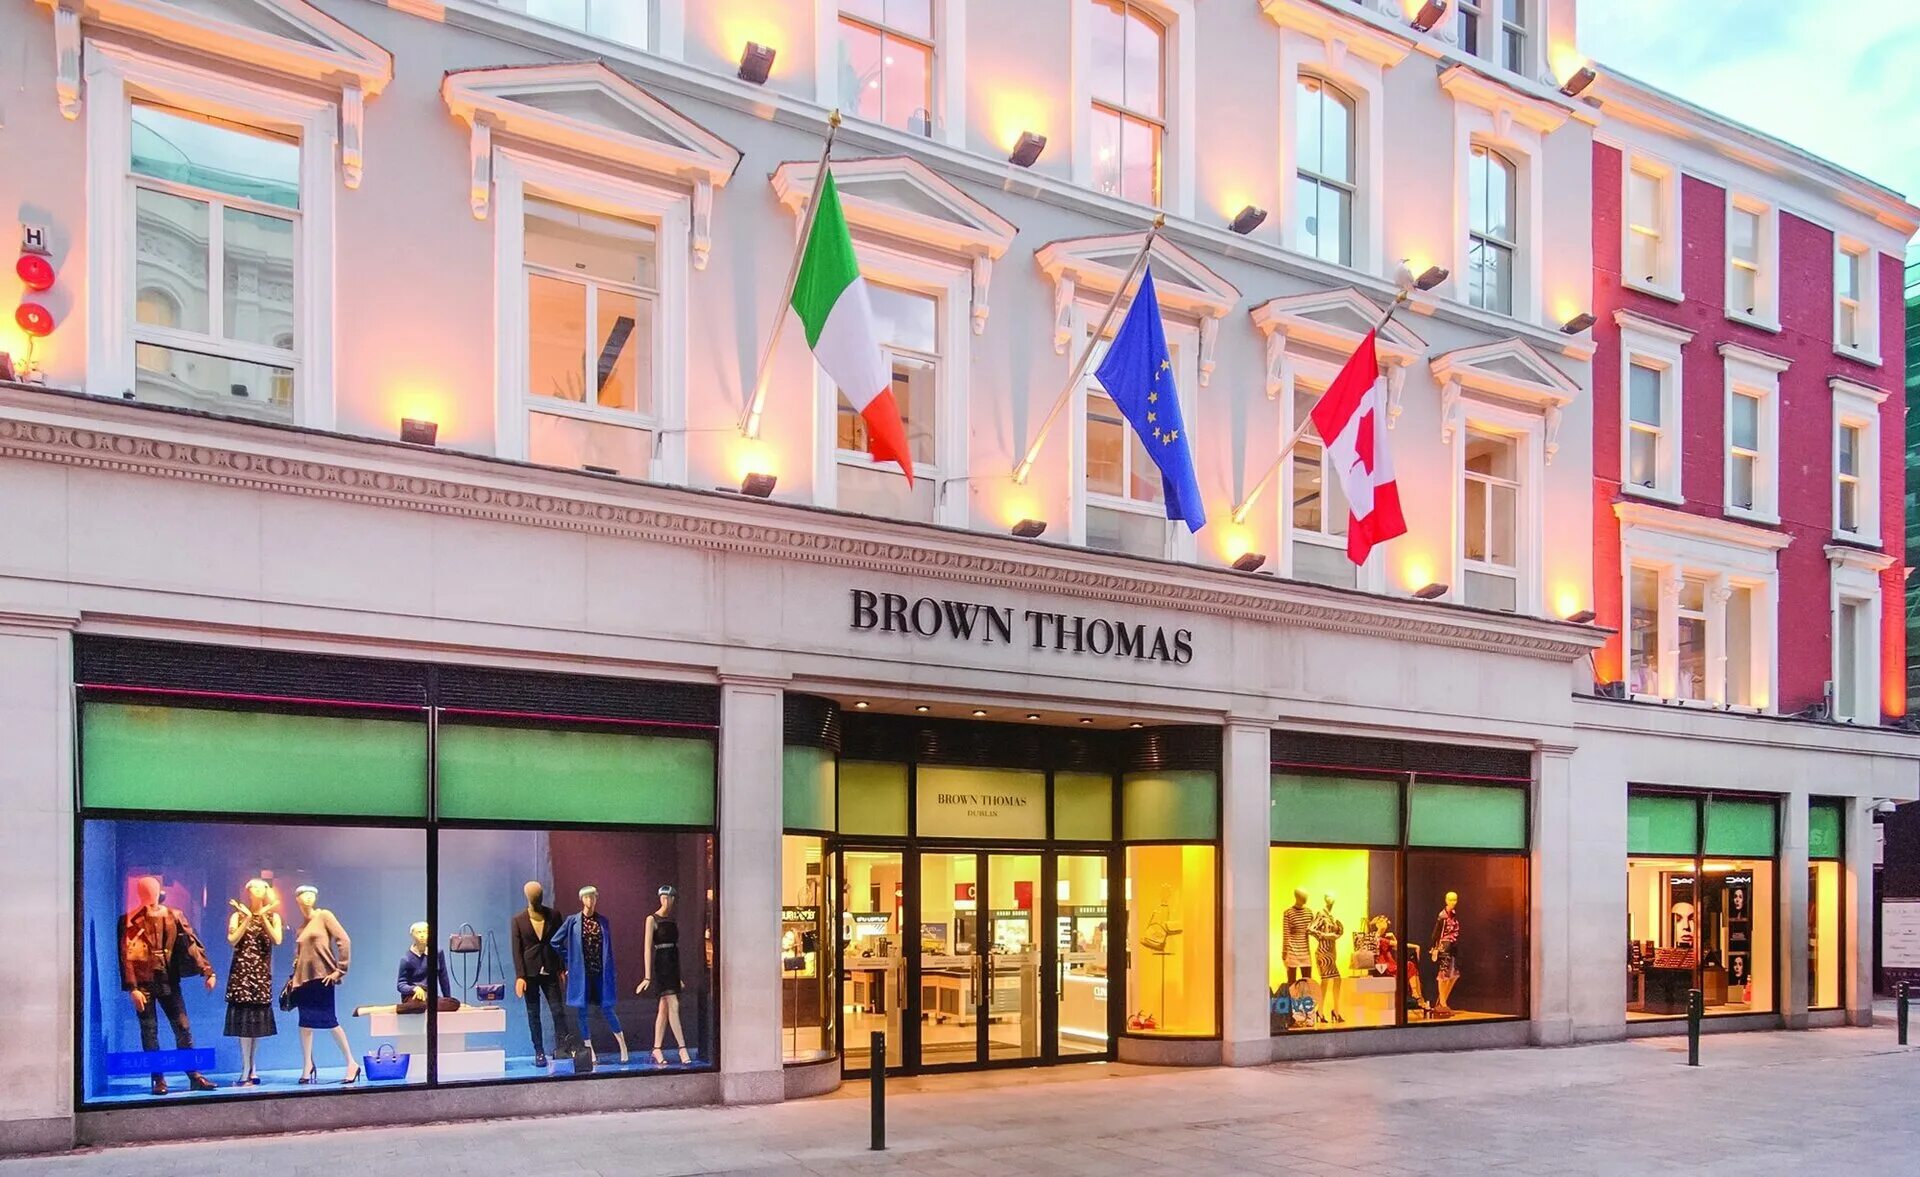 Brown shop. Dublin Braun Thomas. Brown Thomas.